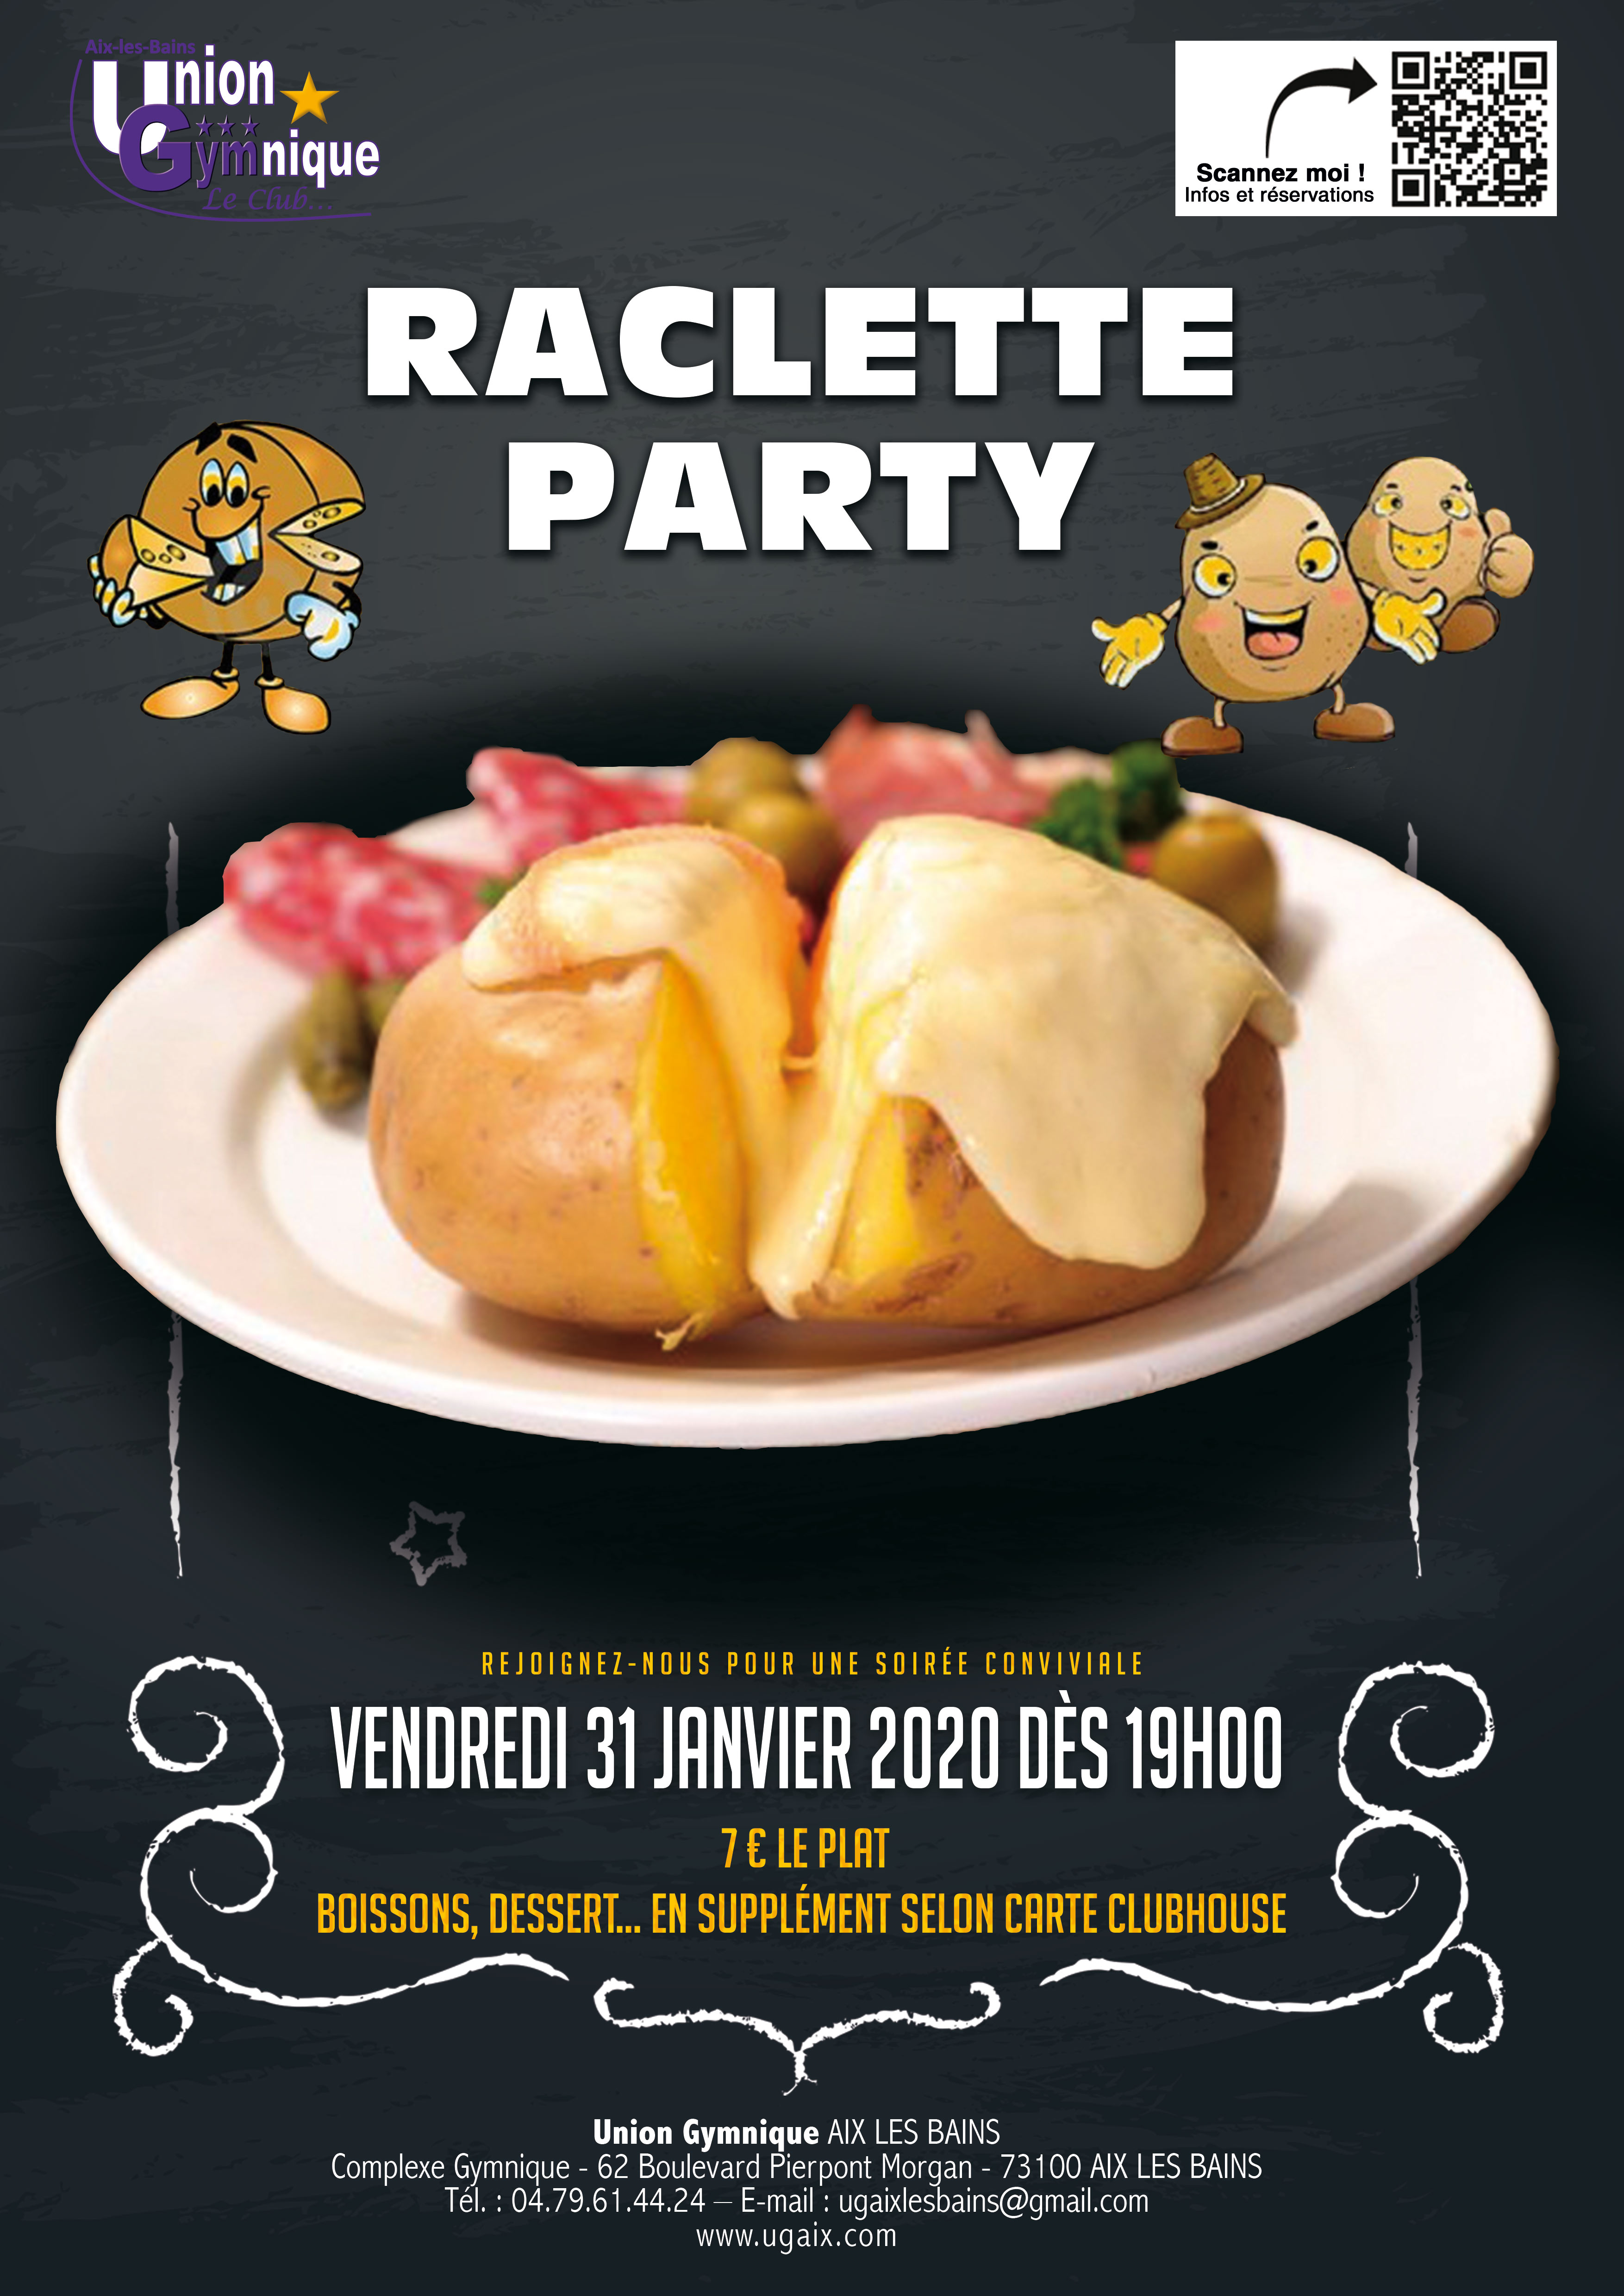 Raclette Party - Vendredi 31 Janvier 2020